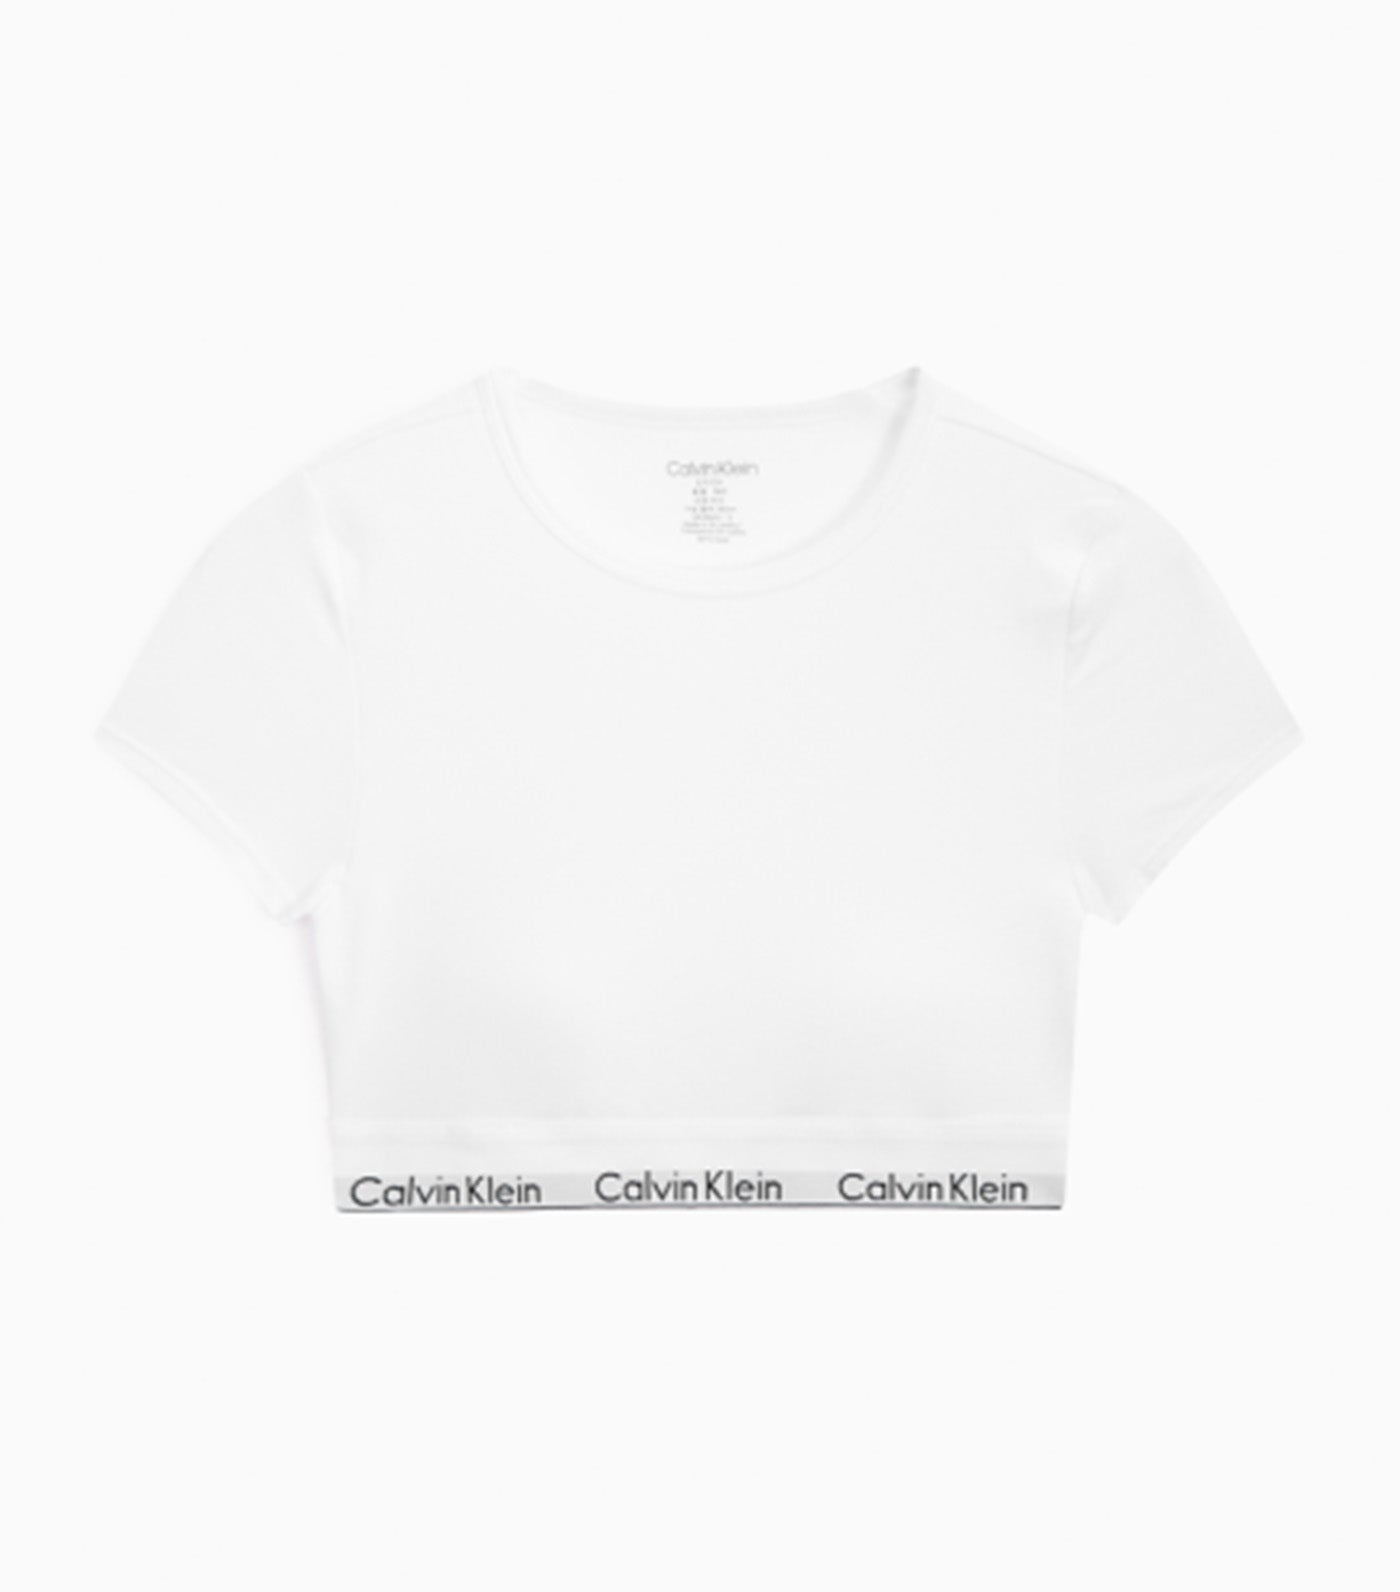 Top MODERN COTTON T-SHIRT BRALETTE Calvin Klein Underwear, Black